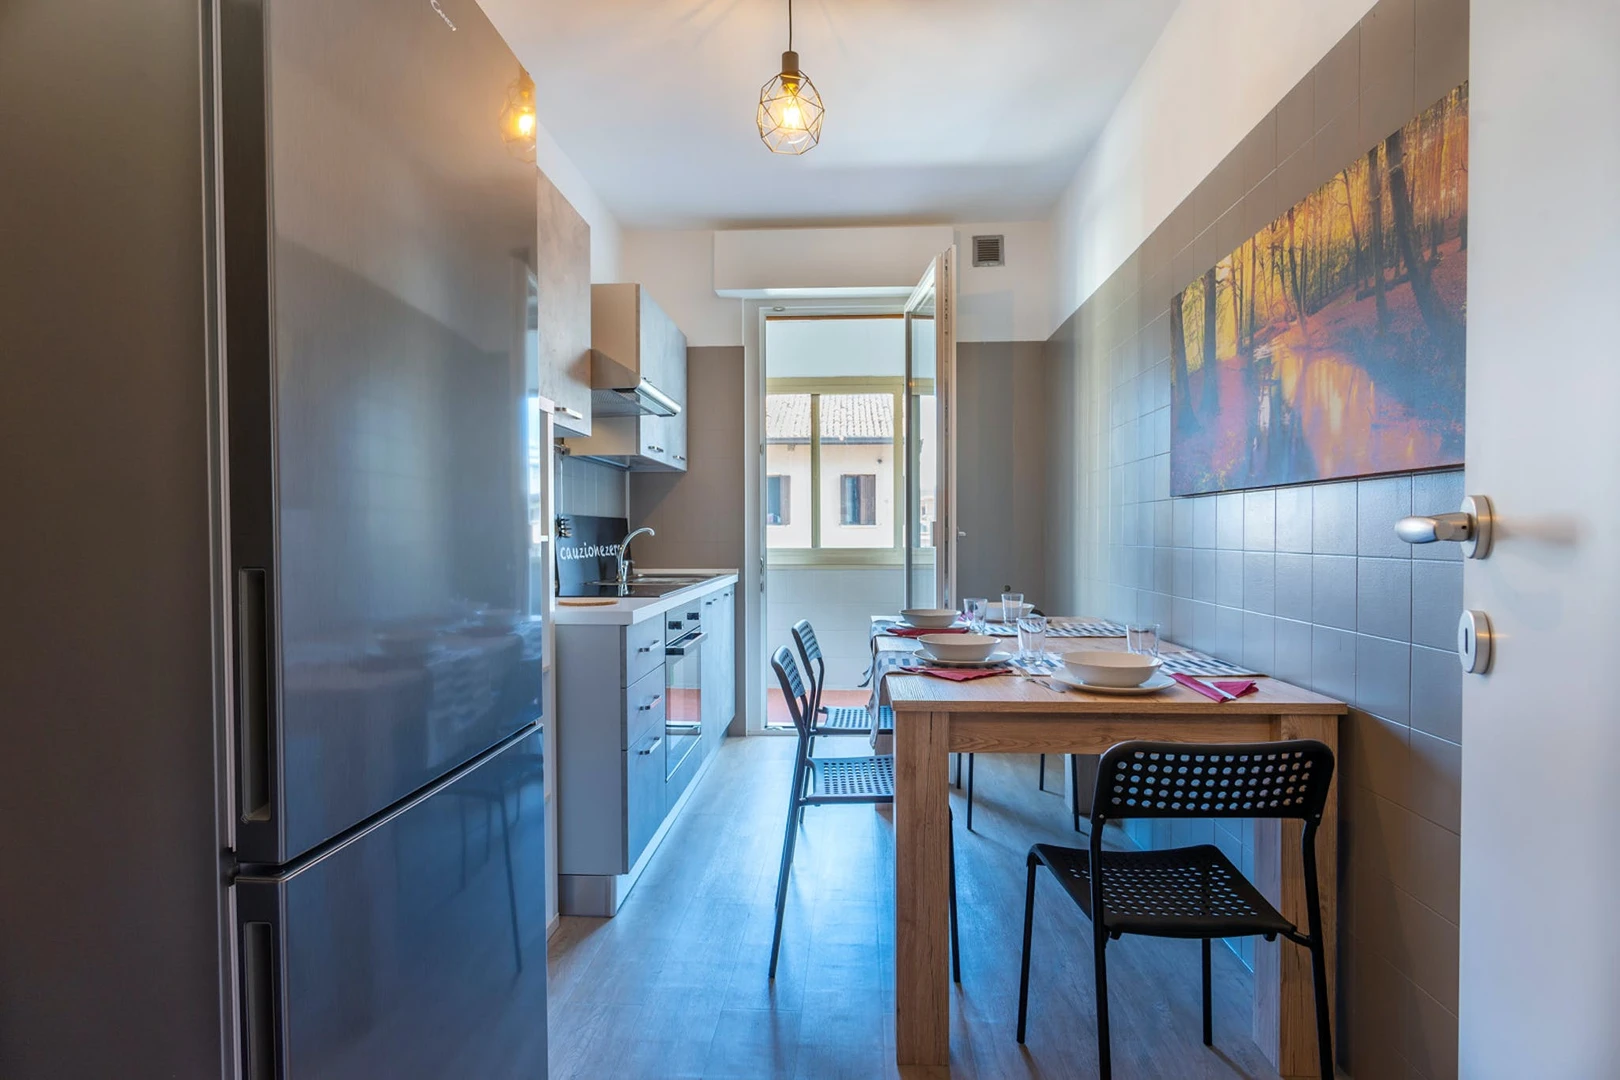 Alquiler de habitaciones por meses en Udine